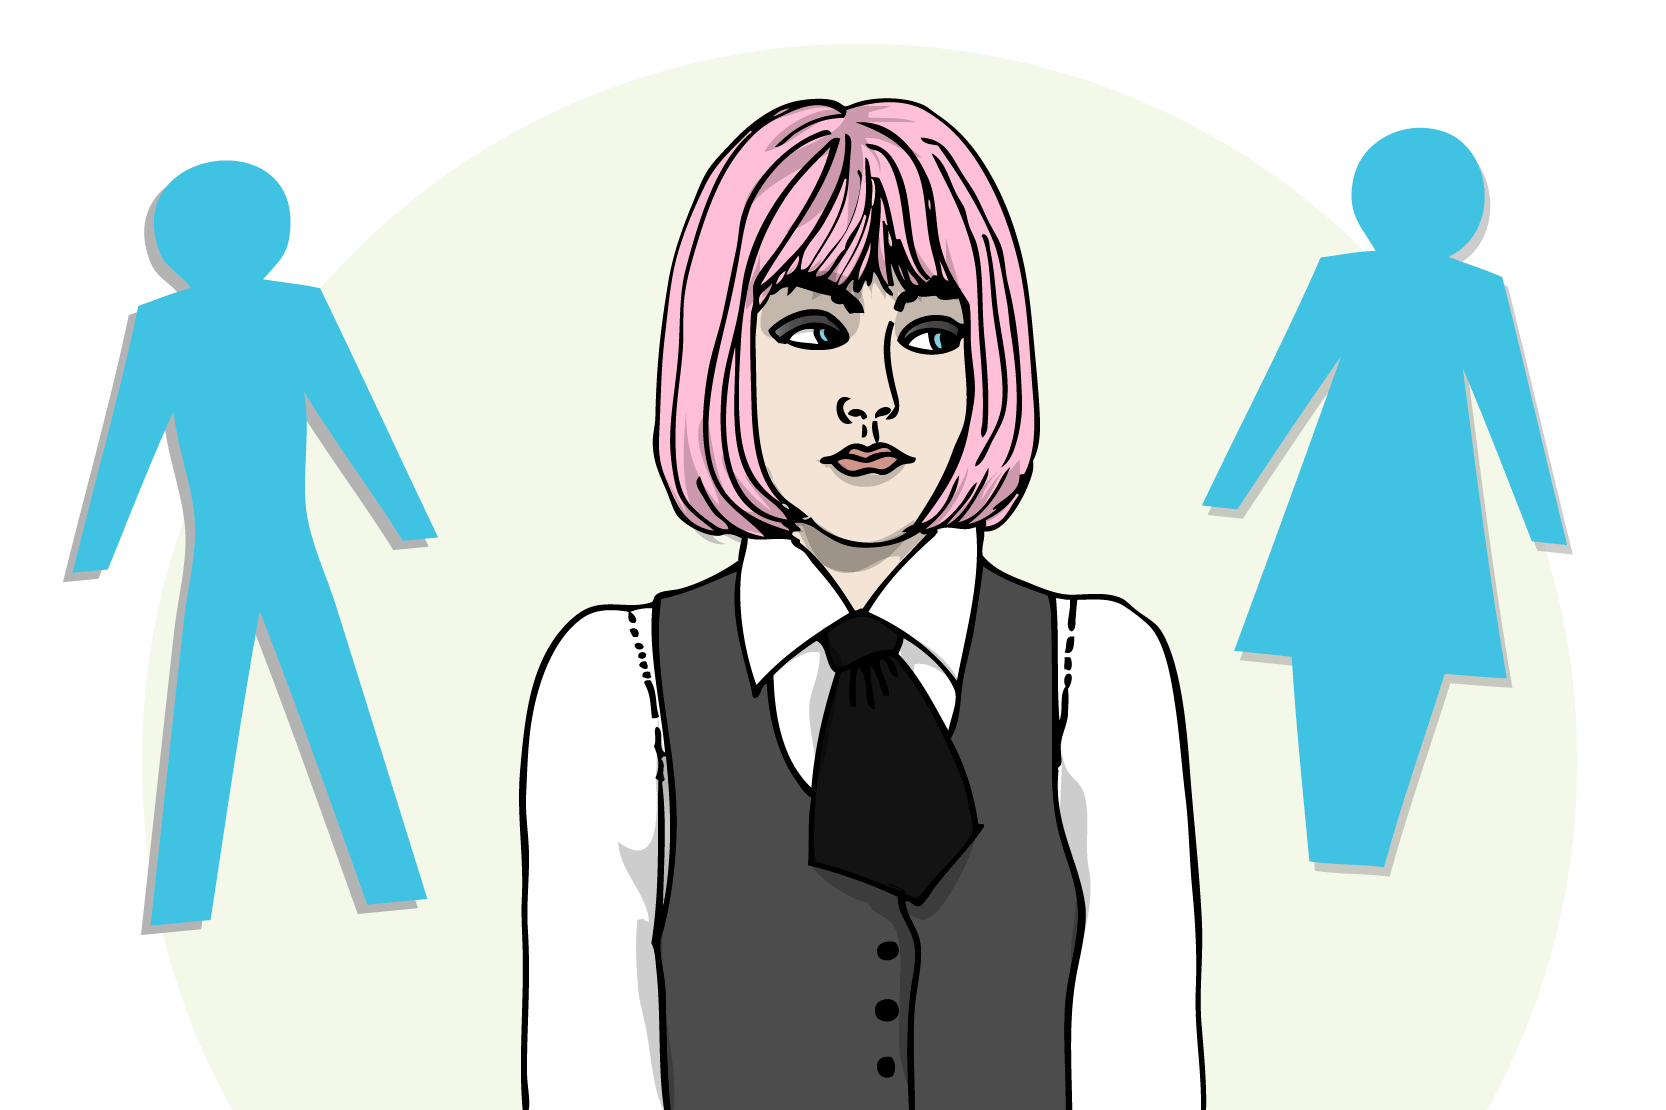 En person med slips och långt rosa hår som sneglar skeptiskt på en kvinno- och manssymbol, sådana som brukar sitta på toalettdörrar. Illustration.